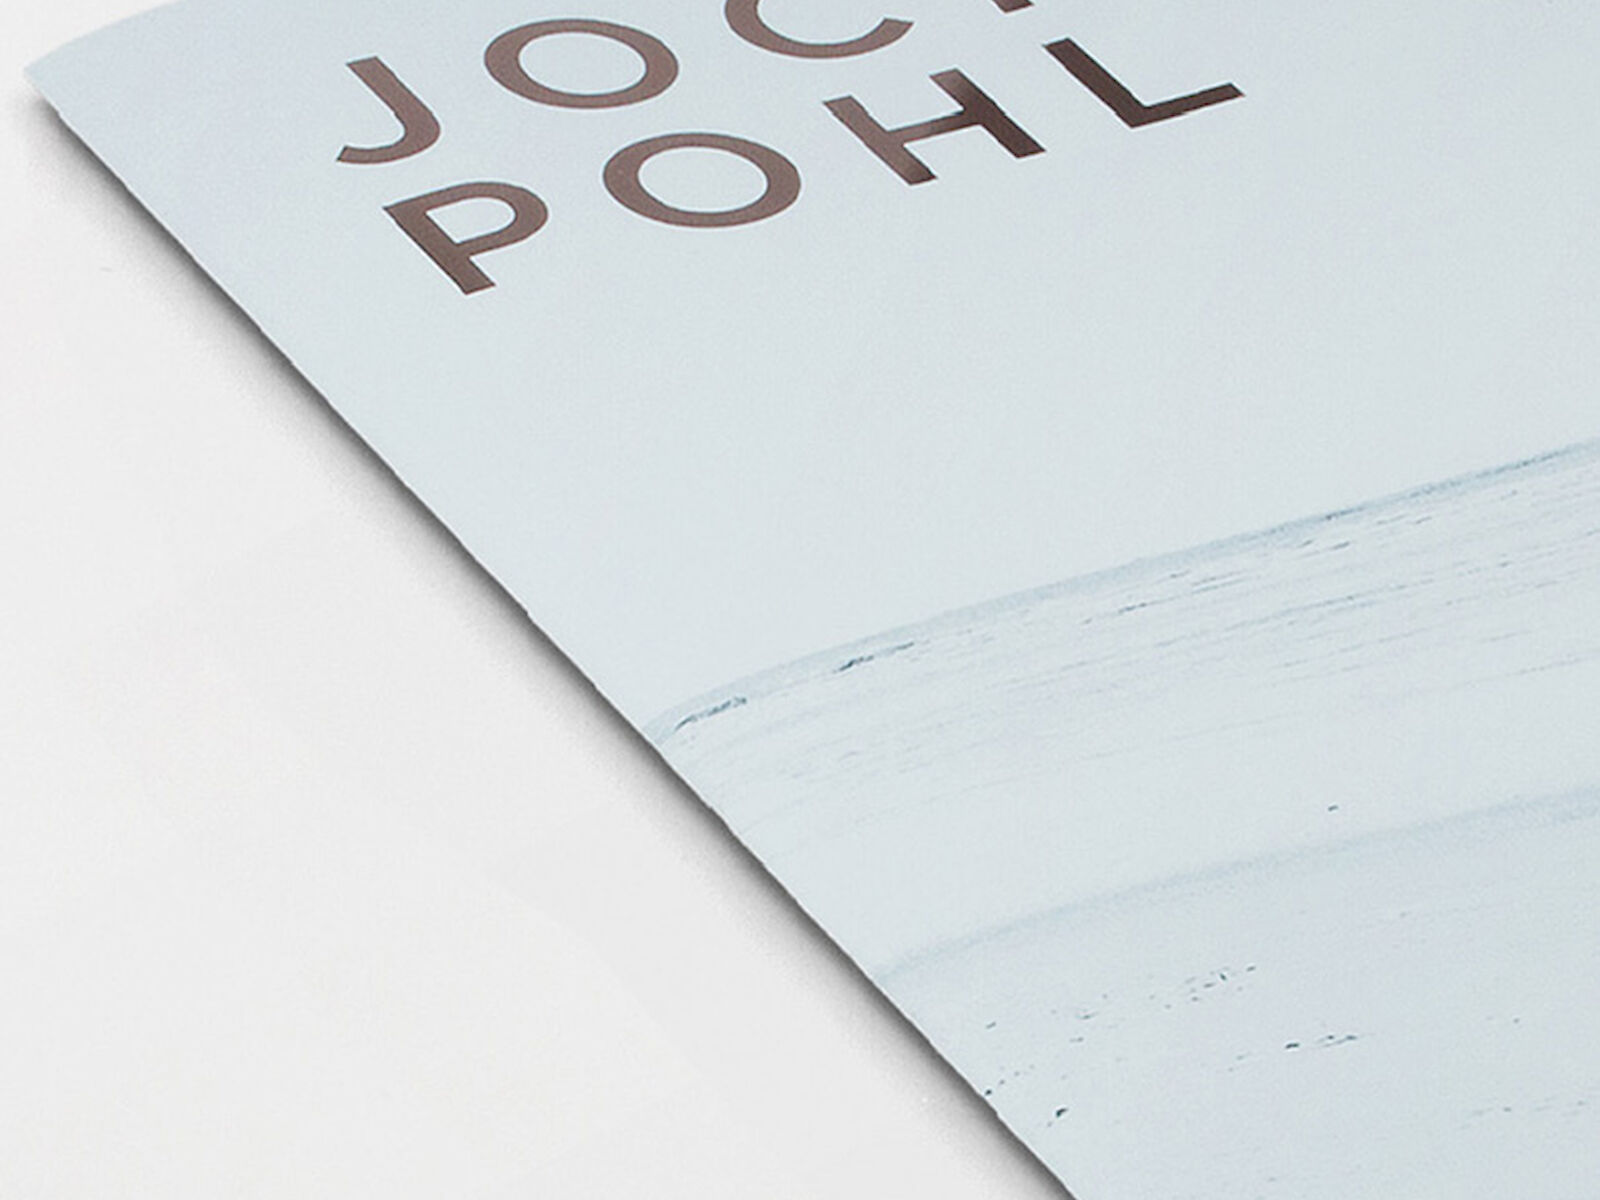 Kataloggestaltung zur Messe Baselword für Jochen Pohl